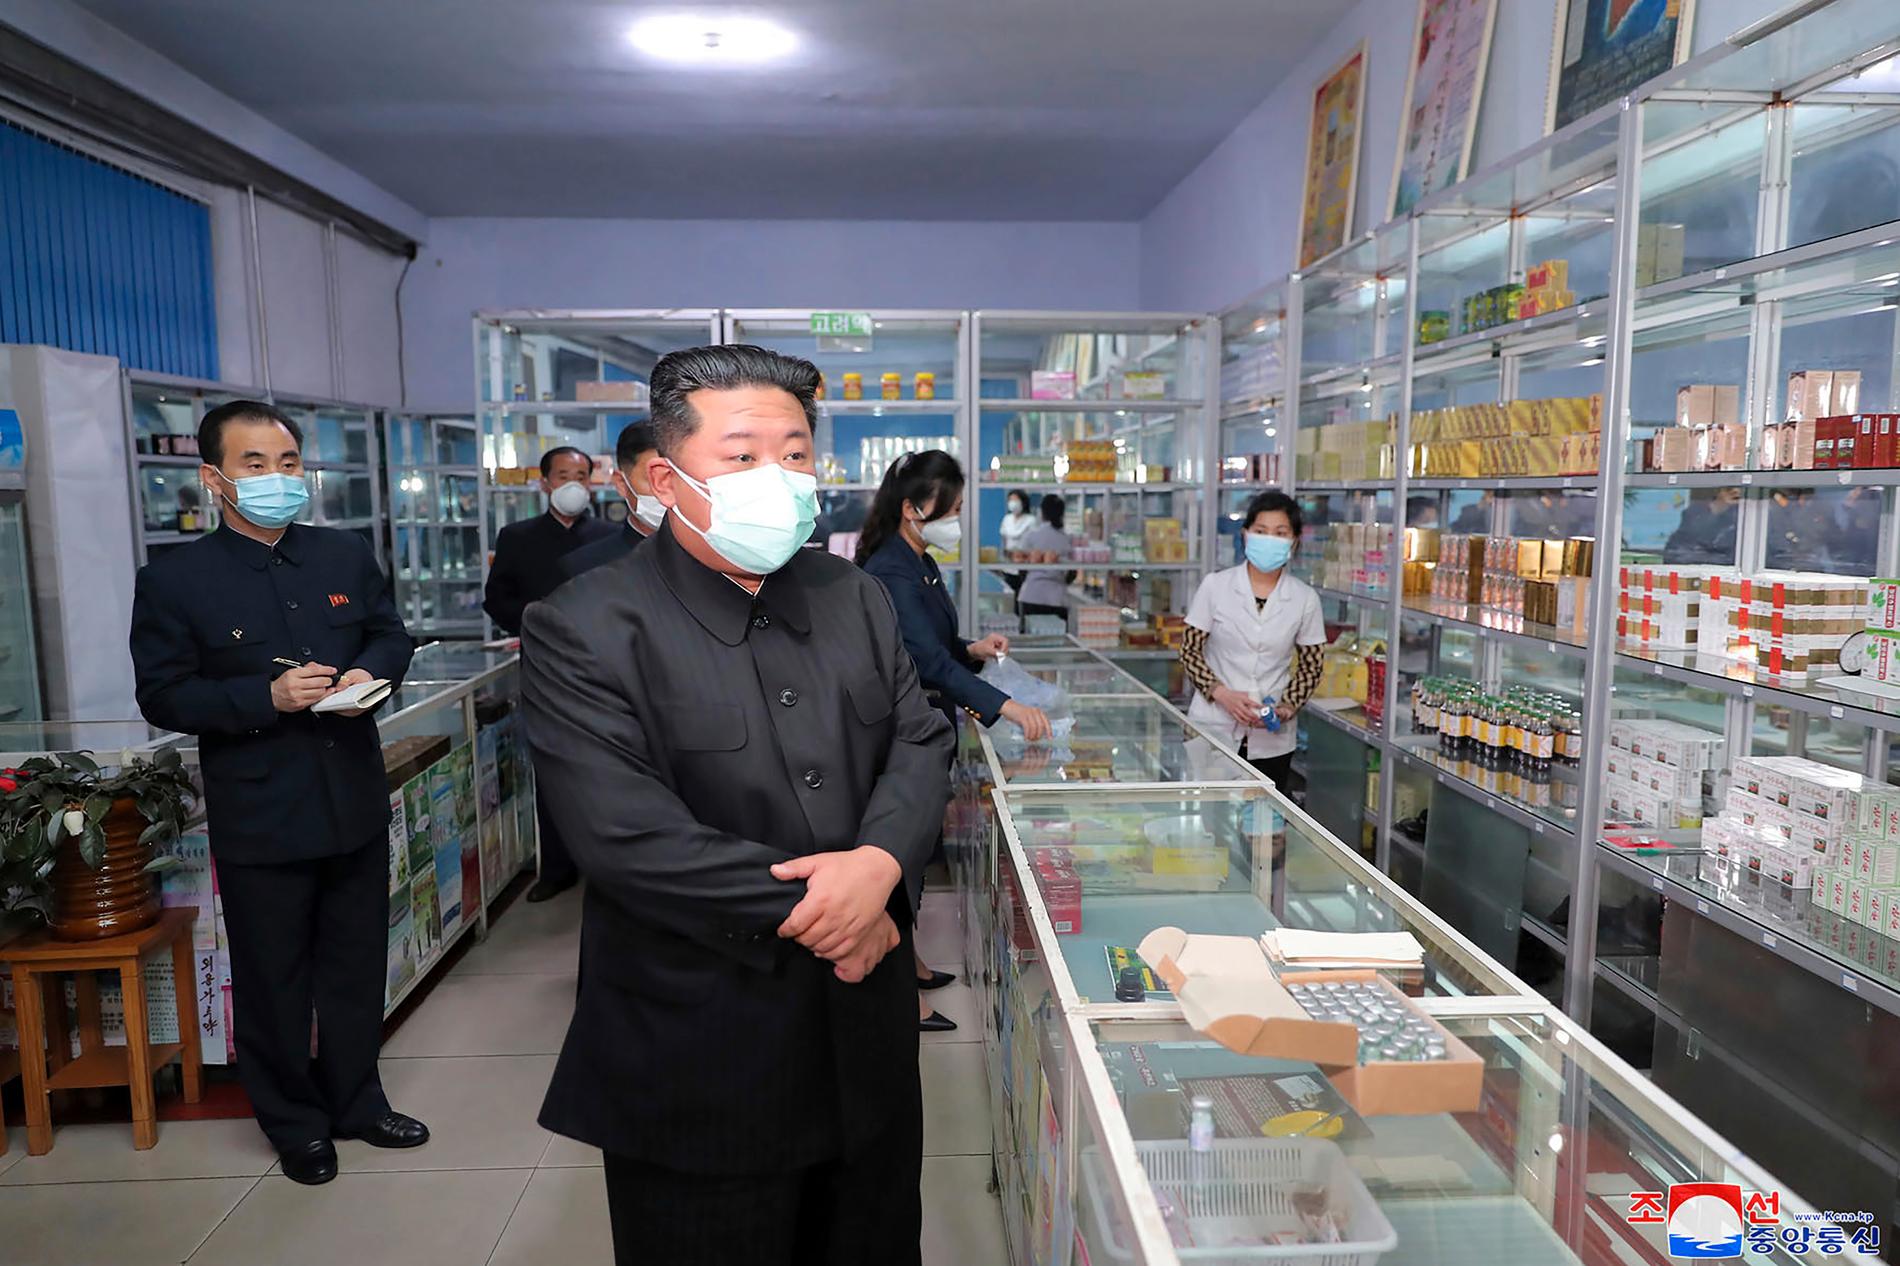 Den nordkoreanske ledaren Kim Jong-Un uppges besöka ett apotek i Pyongyang på söndagen. Bilden kommer från nordkoreanska regeringen.